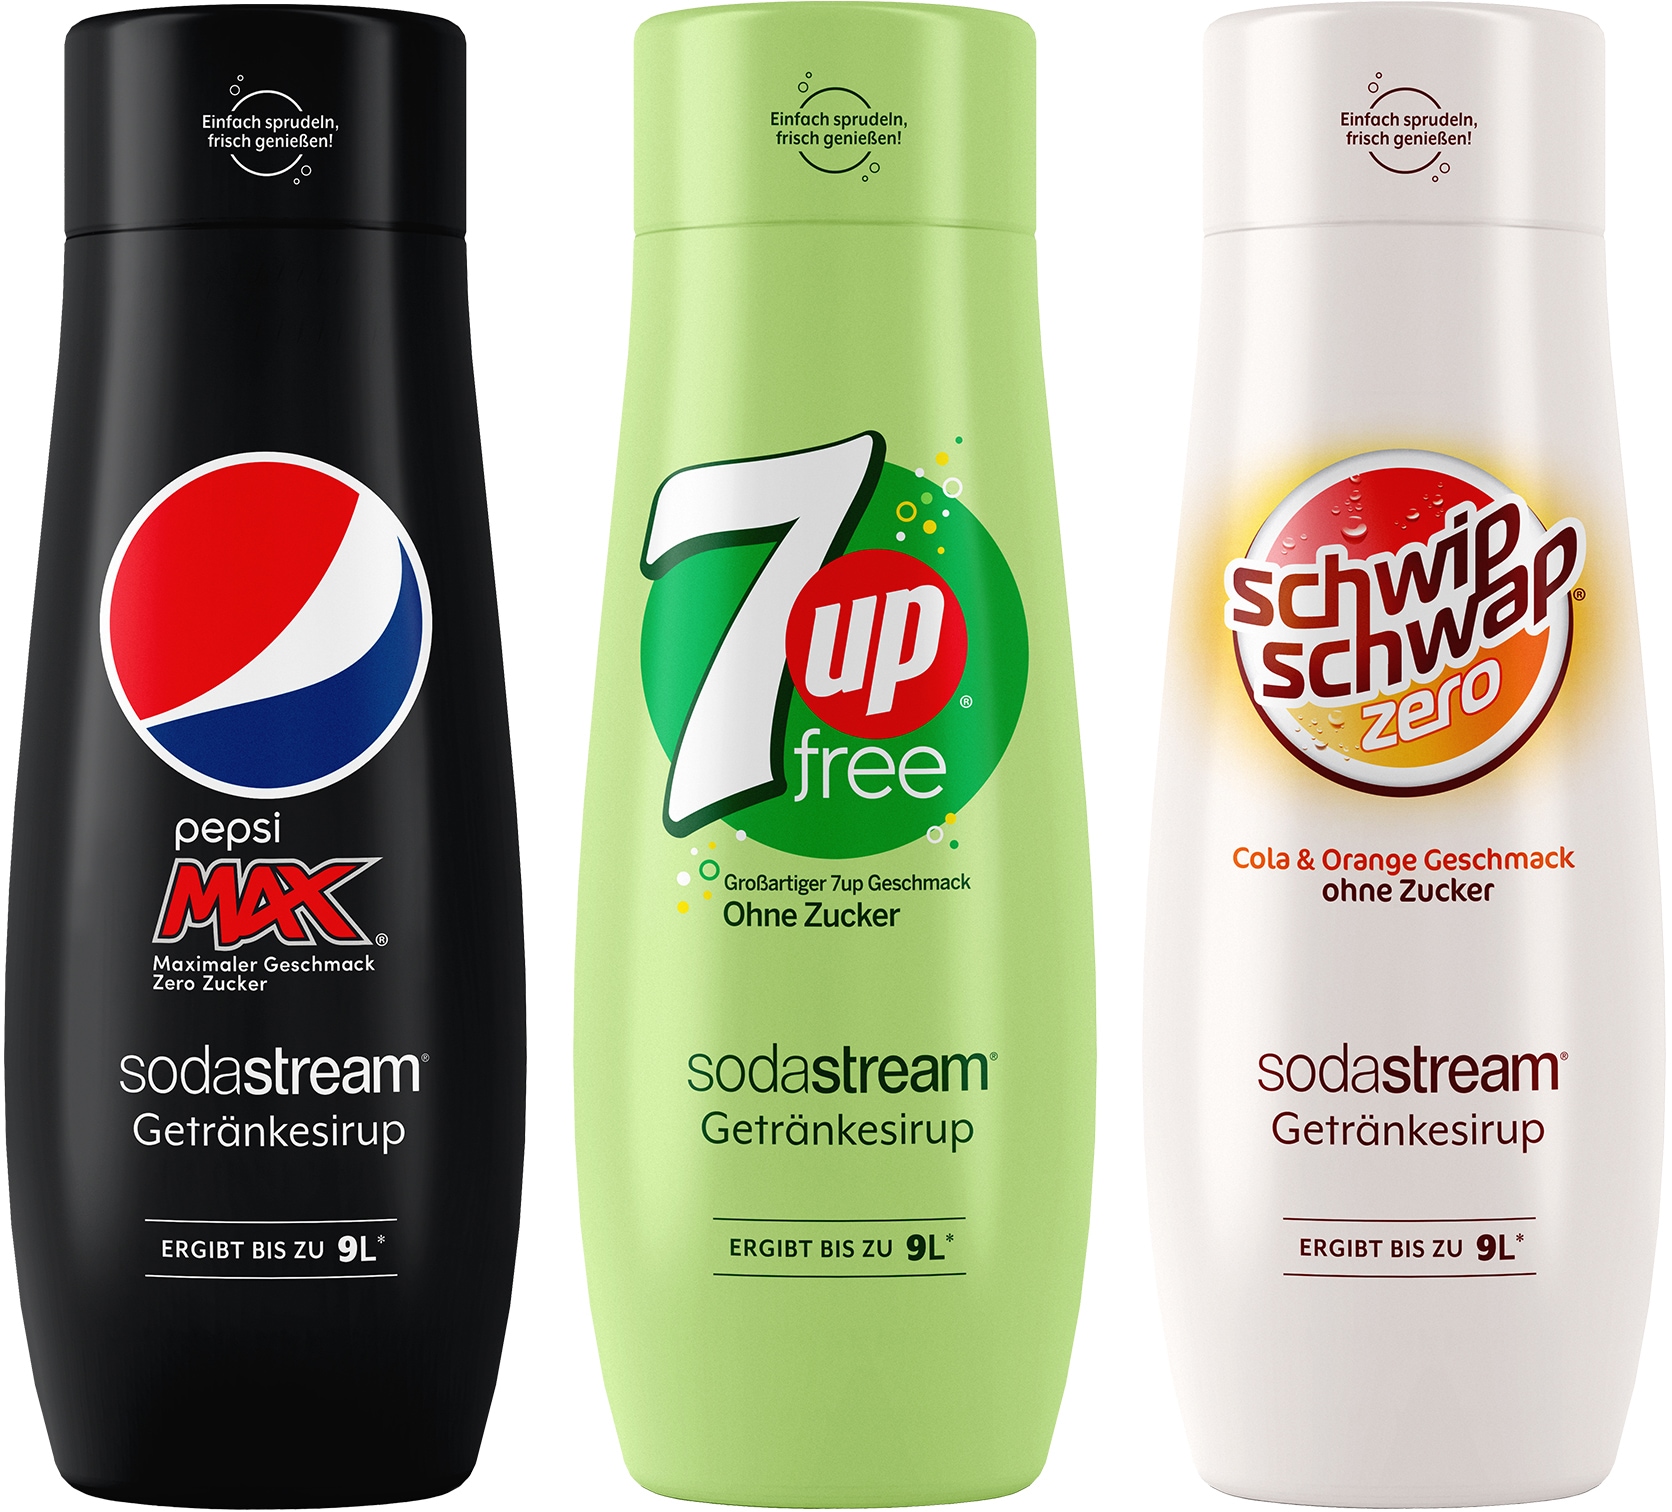 SodaStream Getränke-Sirup, (3 Flaschen), PepsiMax,7UP Free+SchwipSchwap Zero,440ml für je 9L Fertiggetränk